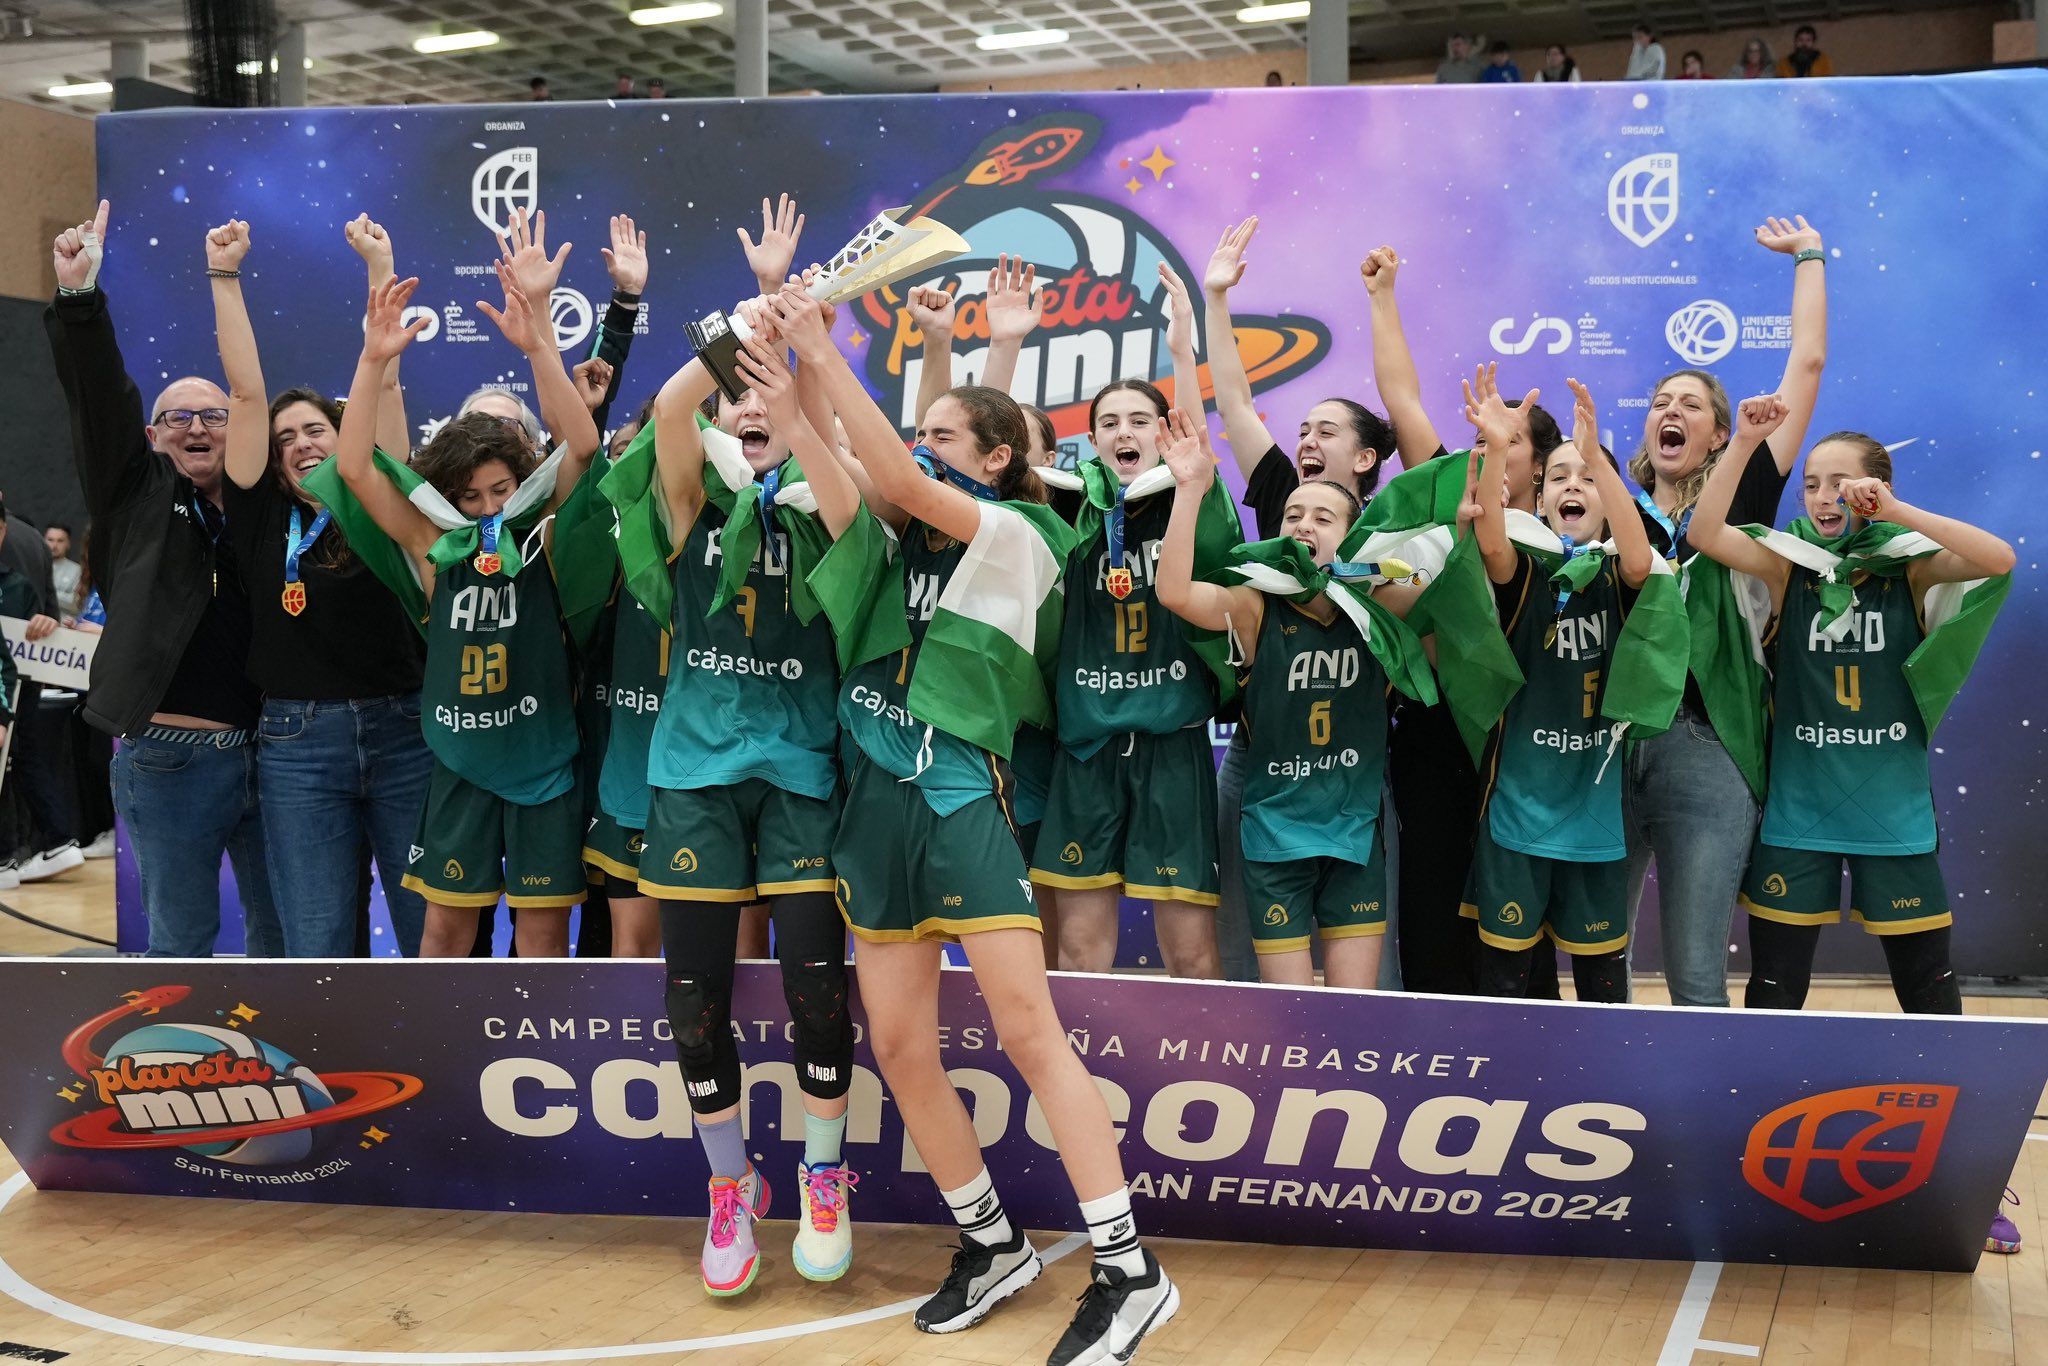 La selección de Andalucía ha hecho historia para el baloncesto de la comunidad al ganar el campeonato de España.